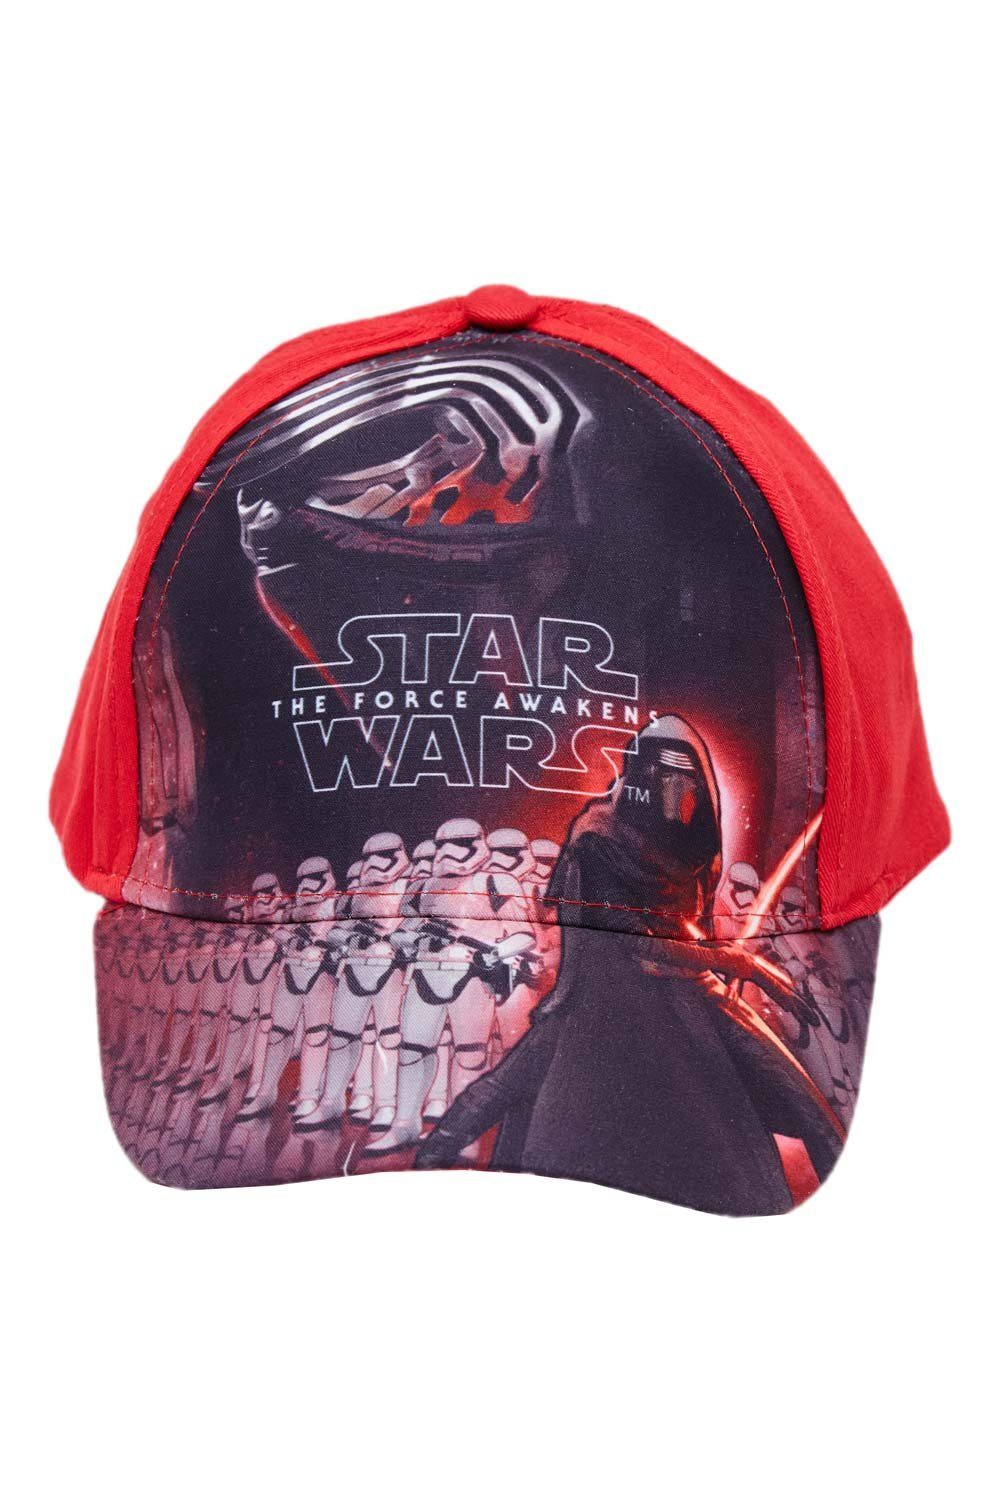 Star Wars Baseball Cap Star Wars Kappe The Force Awakens Jungen Mütze Rot